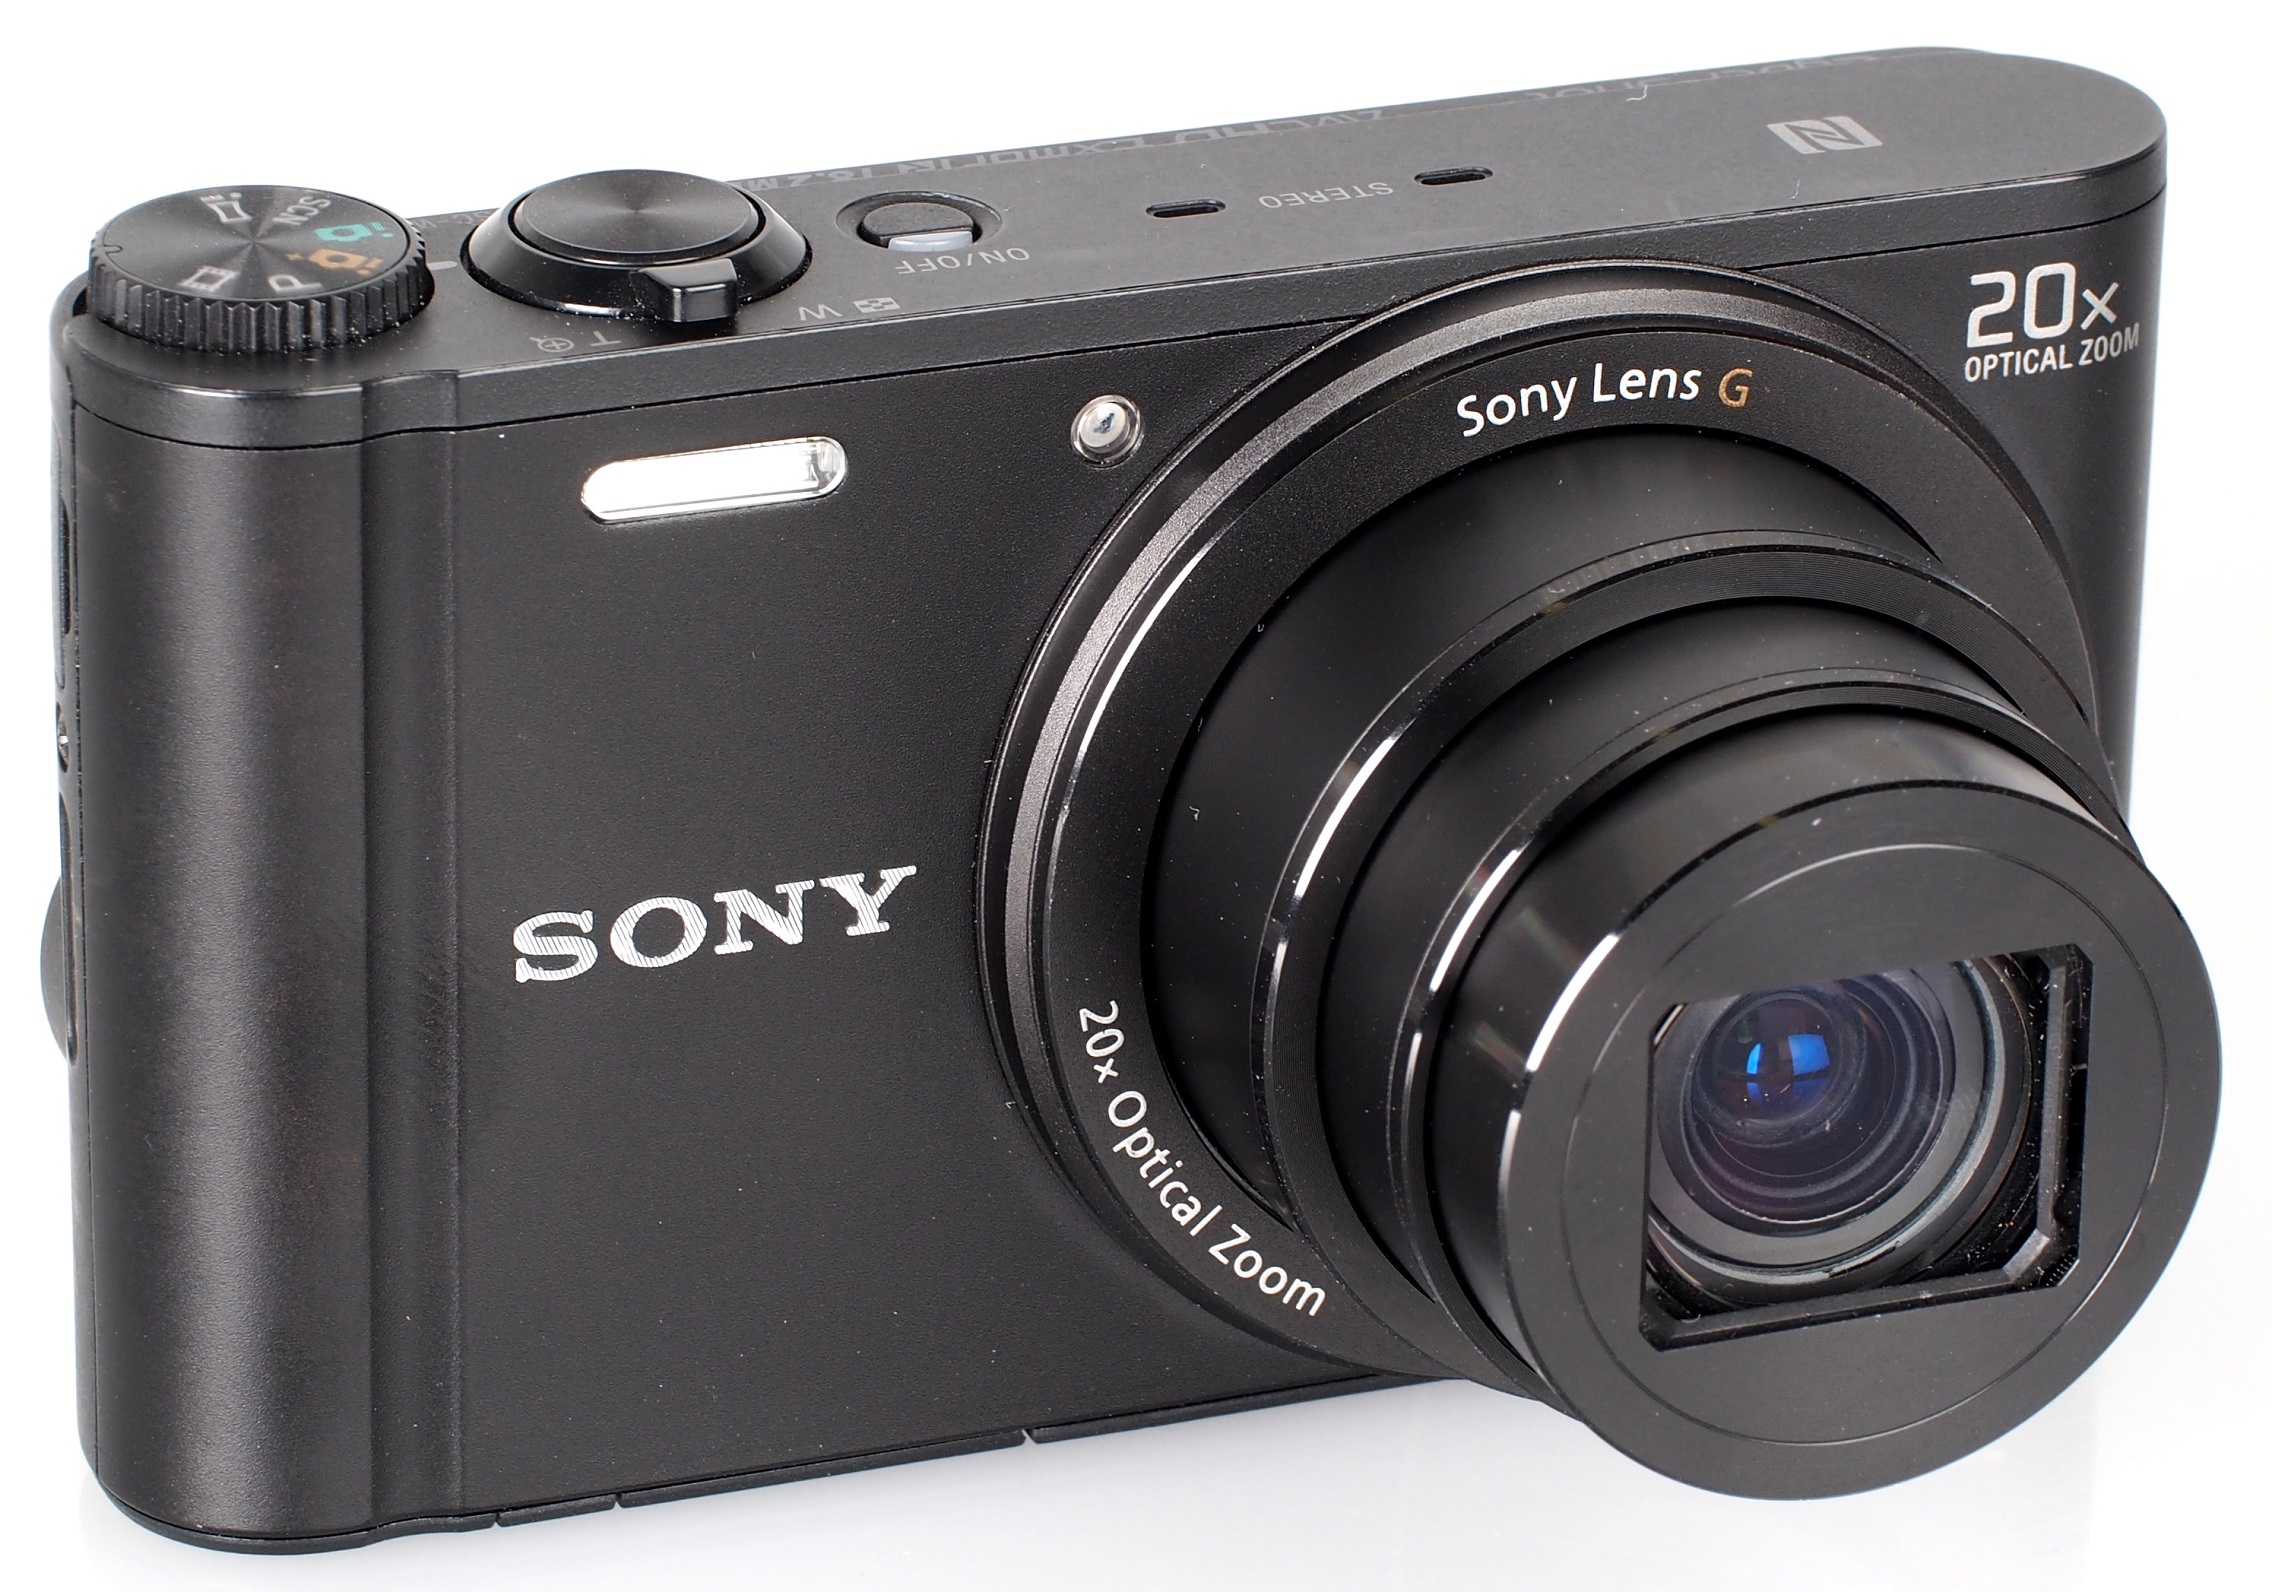 Sony Cyber-shot DSC-WX350 Review